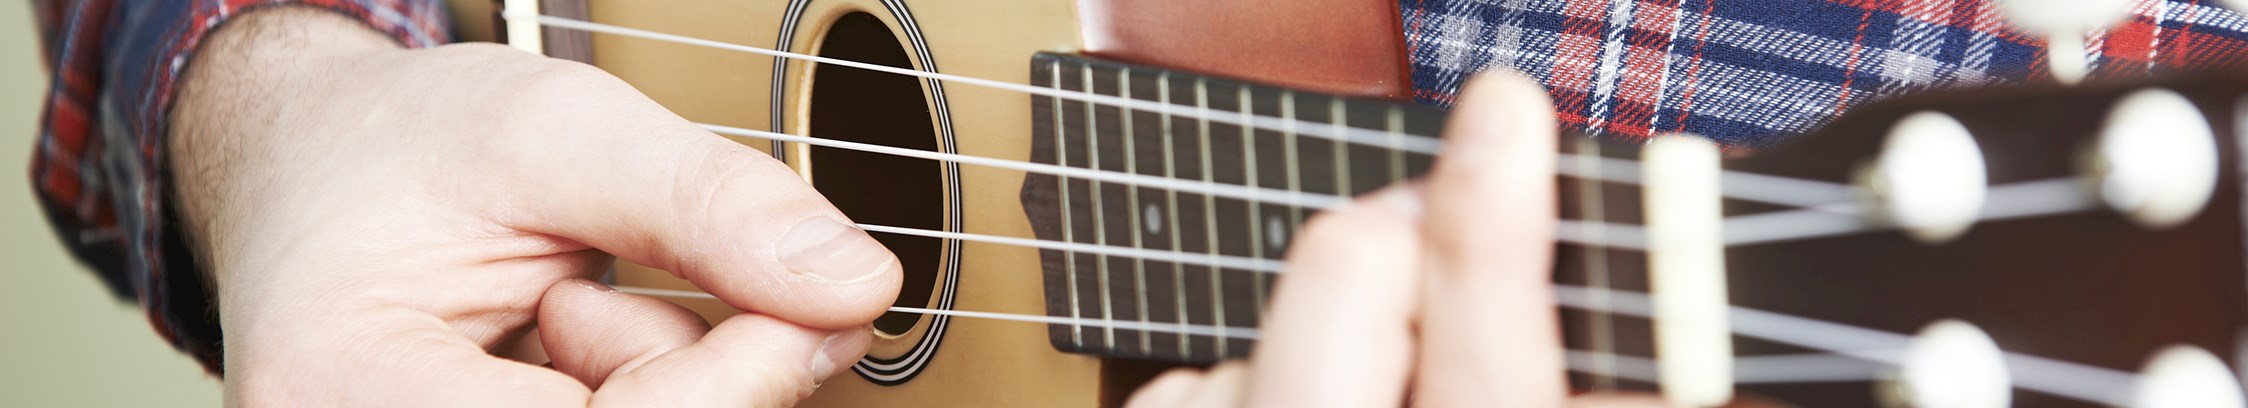 Lær at spille ukulele hos FOF København